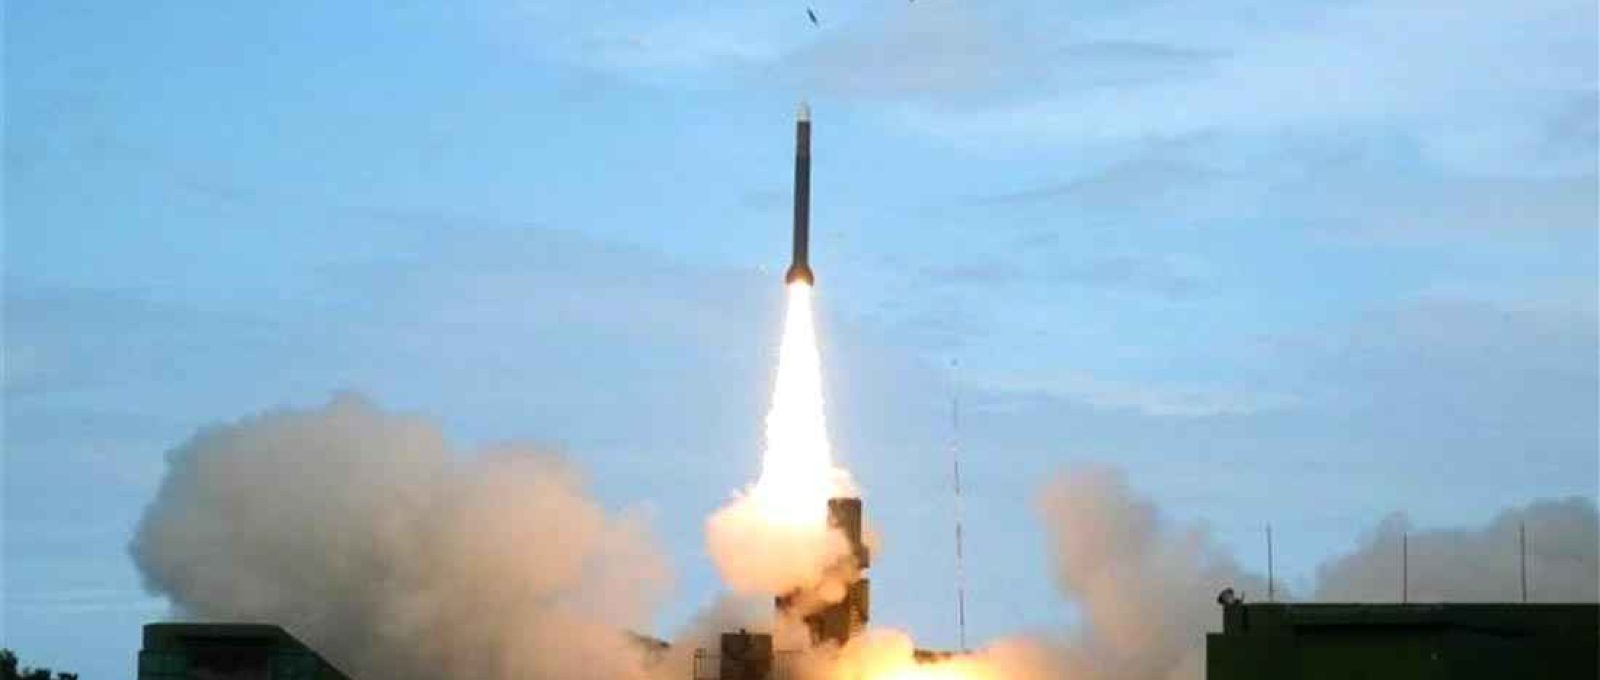 Um teste de míssil em Taiwan (Foto: Instituto Nacional de Ciência e Tecnologia Chung-Shan).